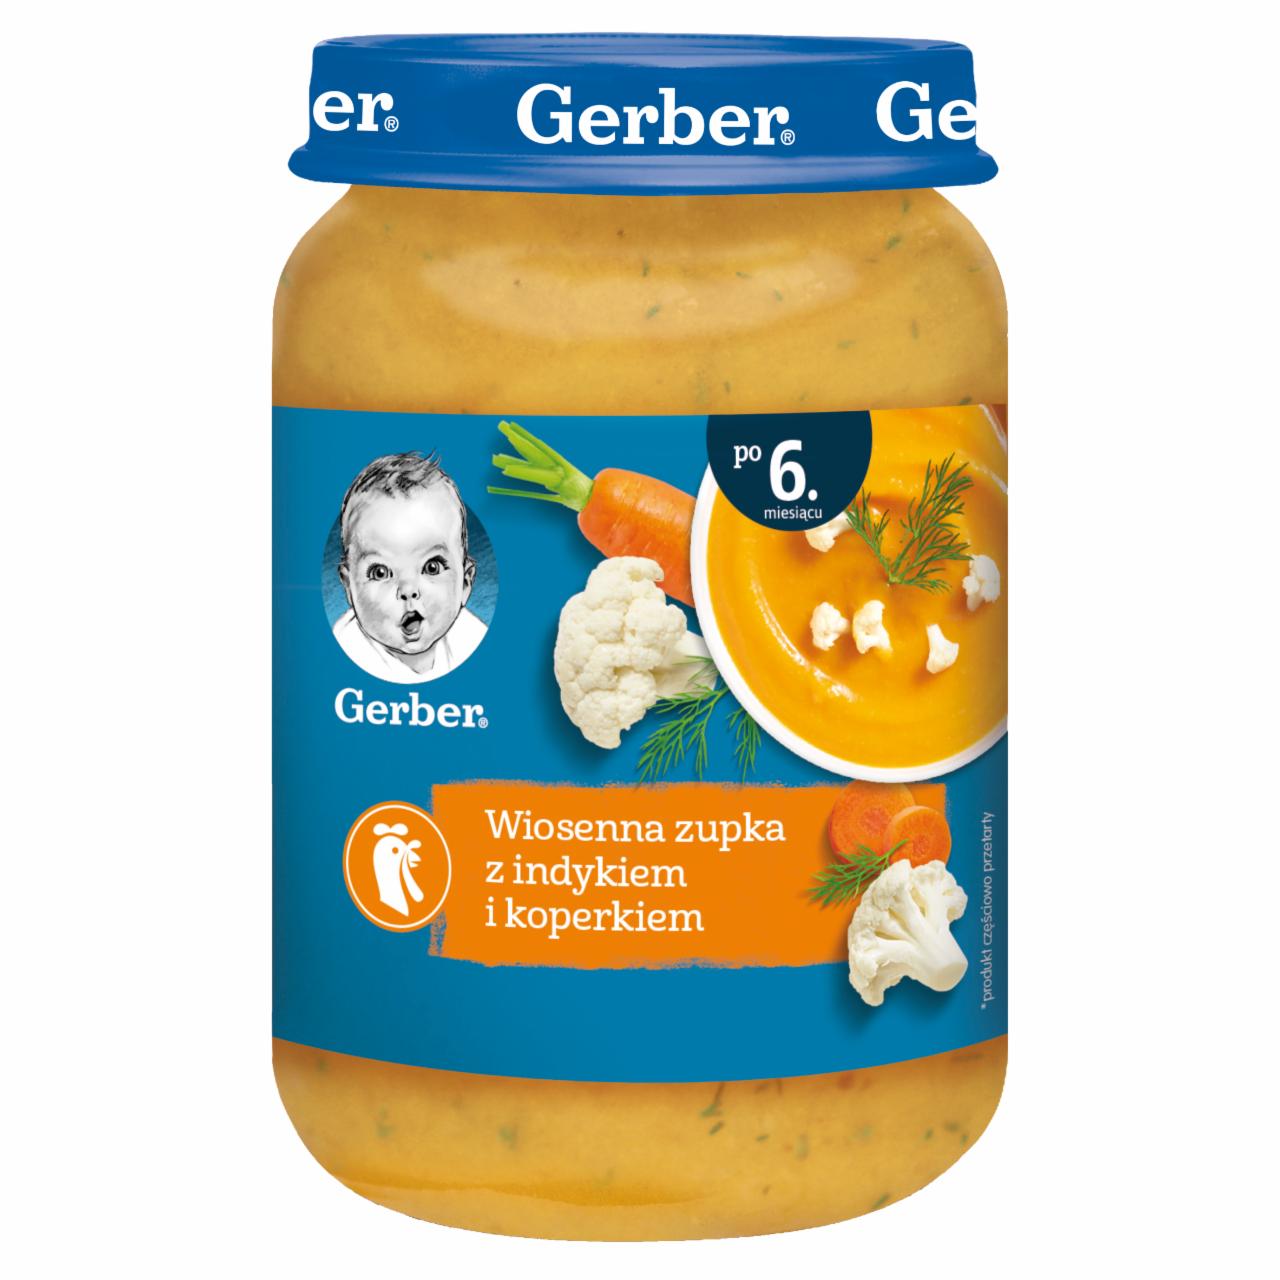 Zdjęcia - Gerber Wiosenna zupka z indykiem i koperkiem dla niemowląt po 6. miesiącu 190 g